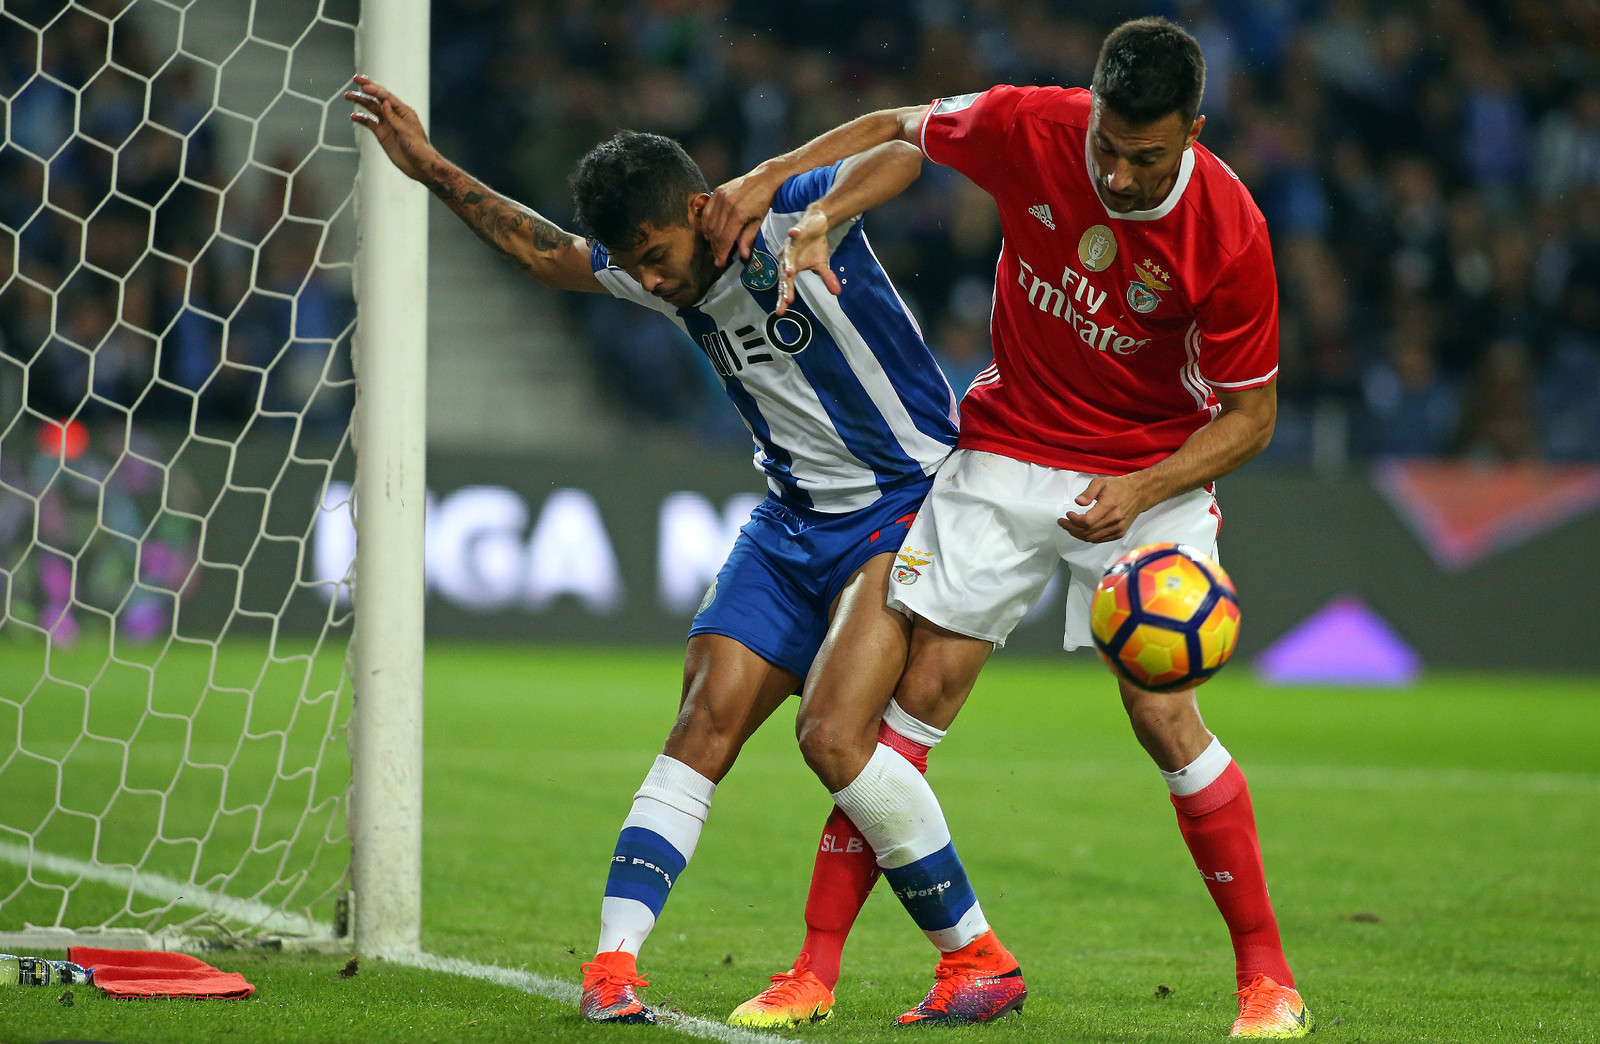 Nhận định Benfica vs Porto, 02h45 23/1 (Cúp Liên đoàn Bồ Đào Nha)